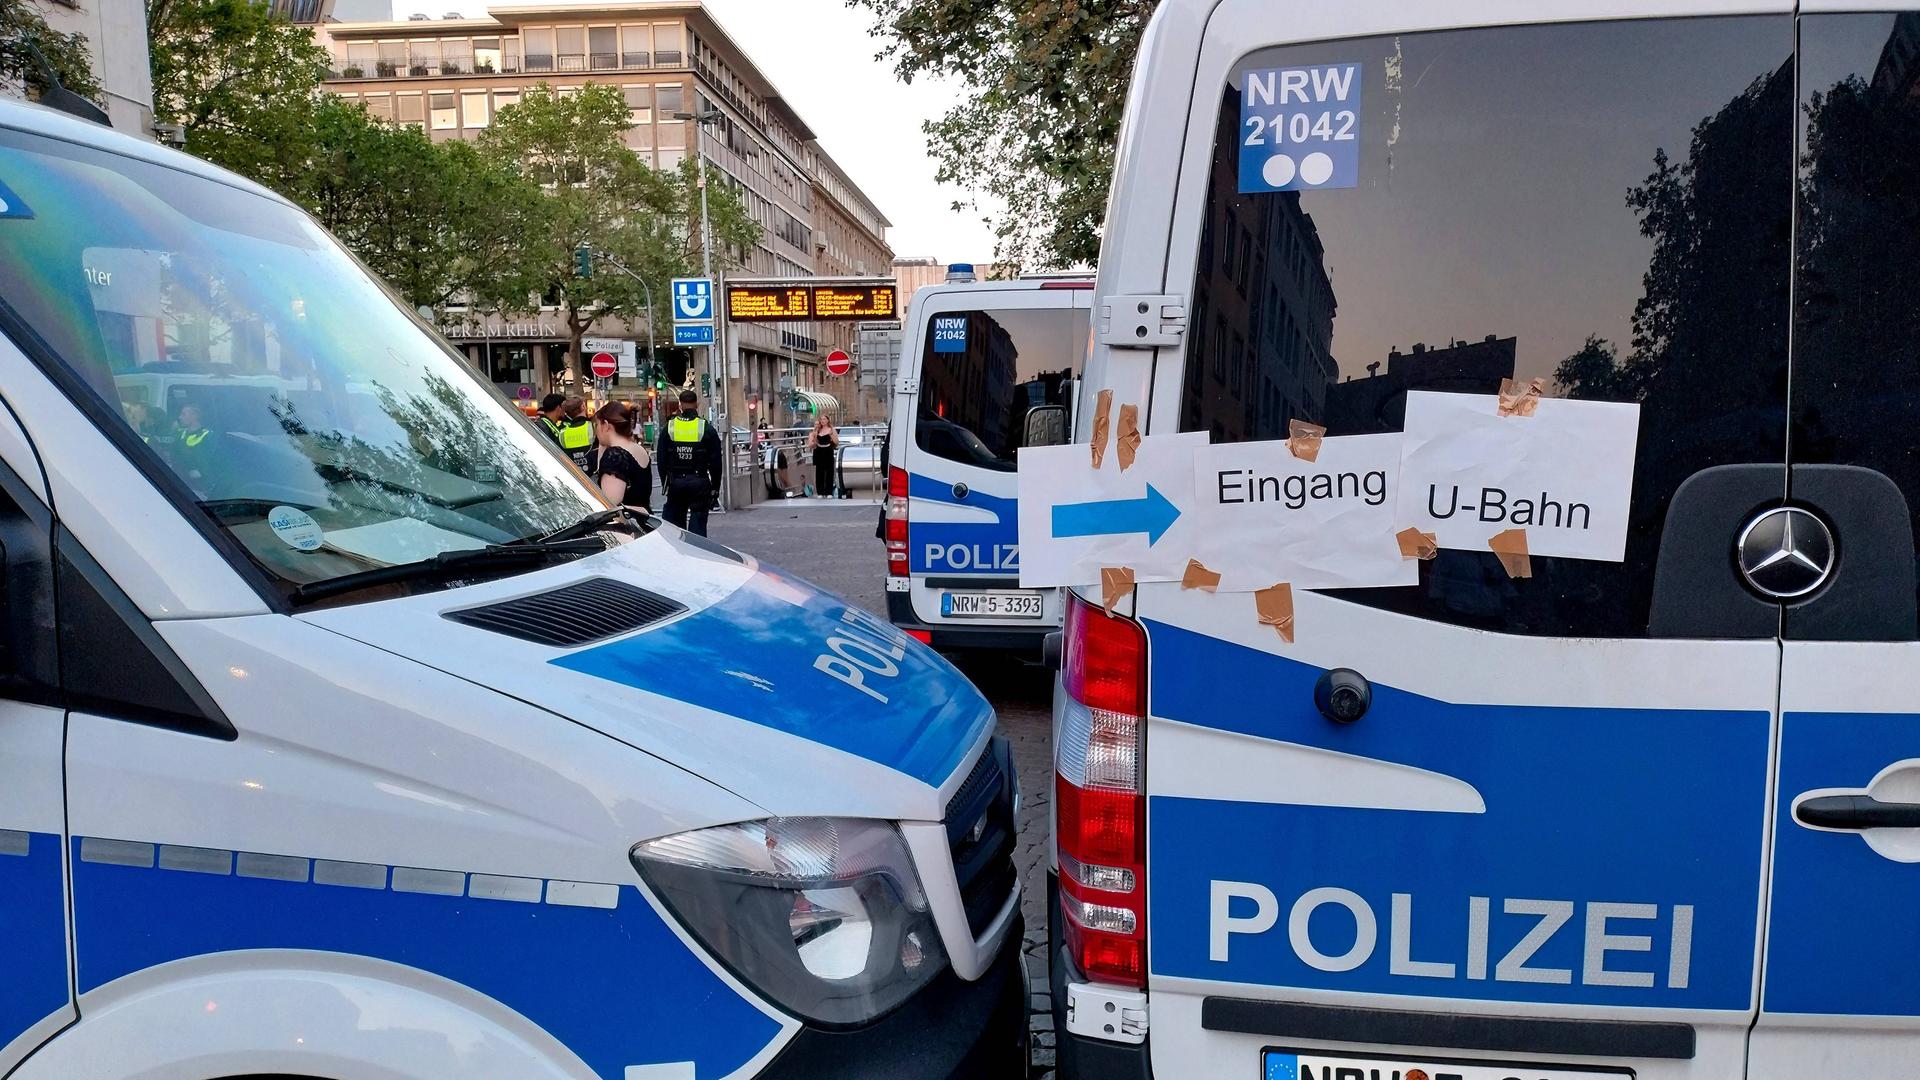 Zu sehen sind mehrere Polizeifahrzeuge an einer Düsseldorfer U-Bahn-Haltestelle. Auf Zetteln steht "Eingang U-Bahn".